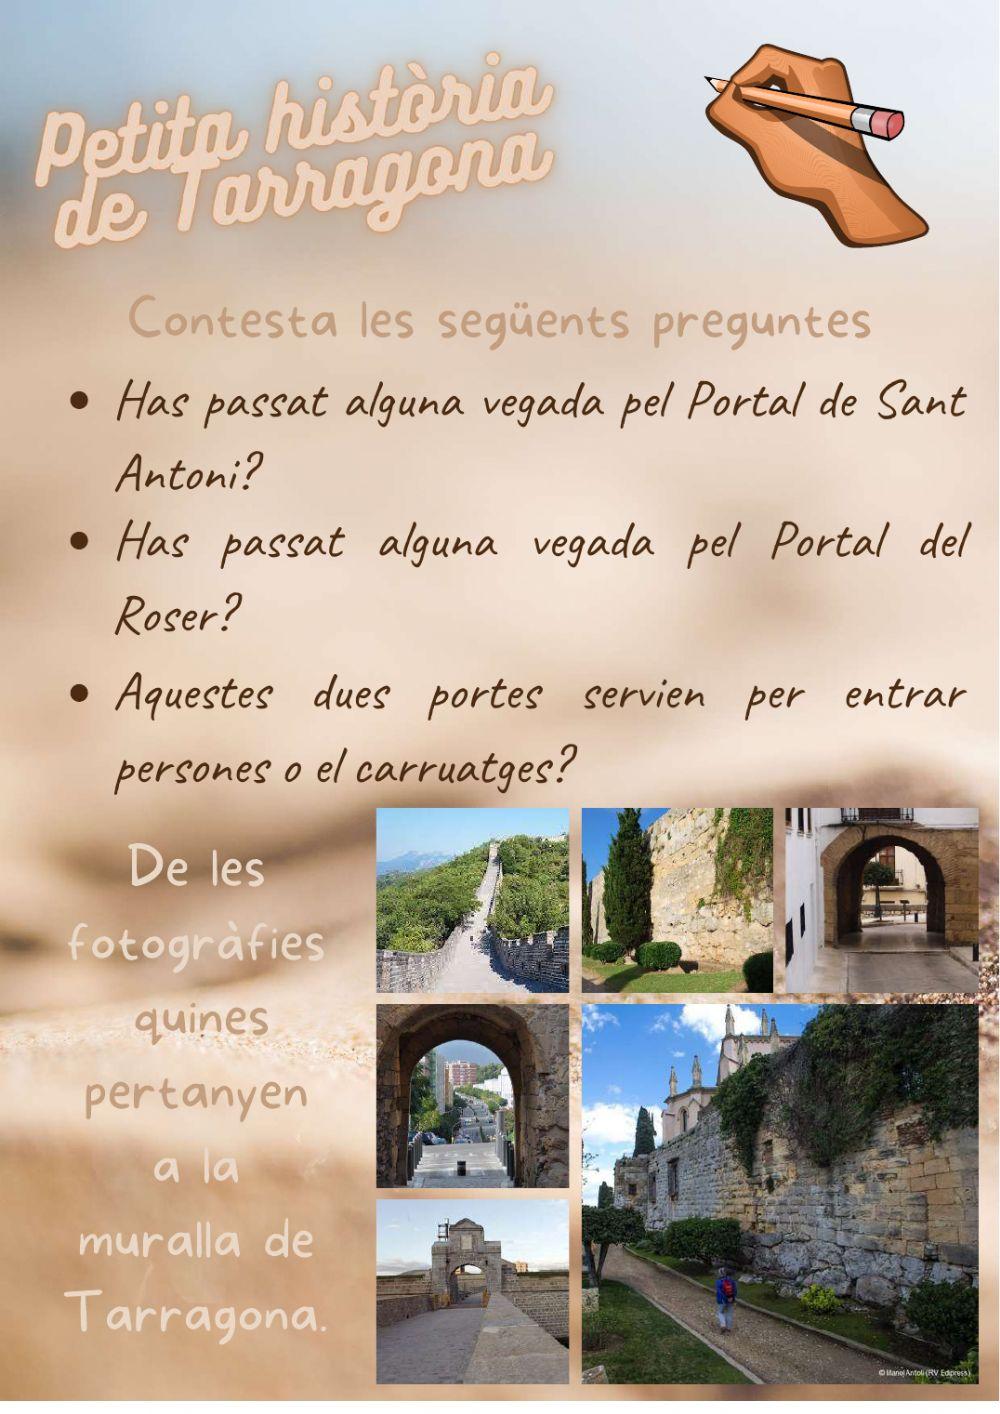 Petita historia de Tarragona 03